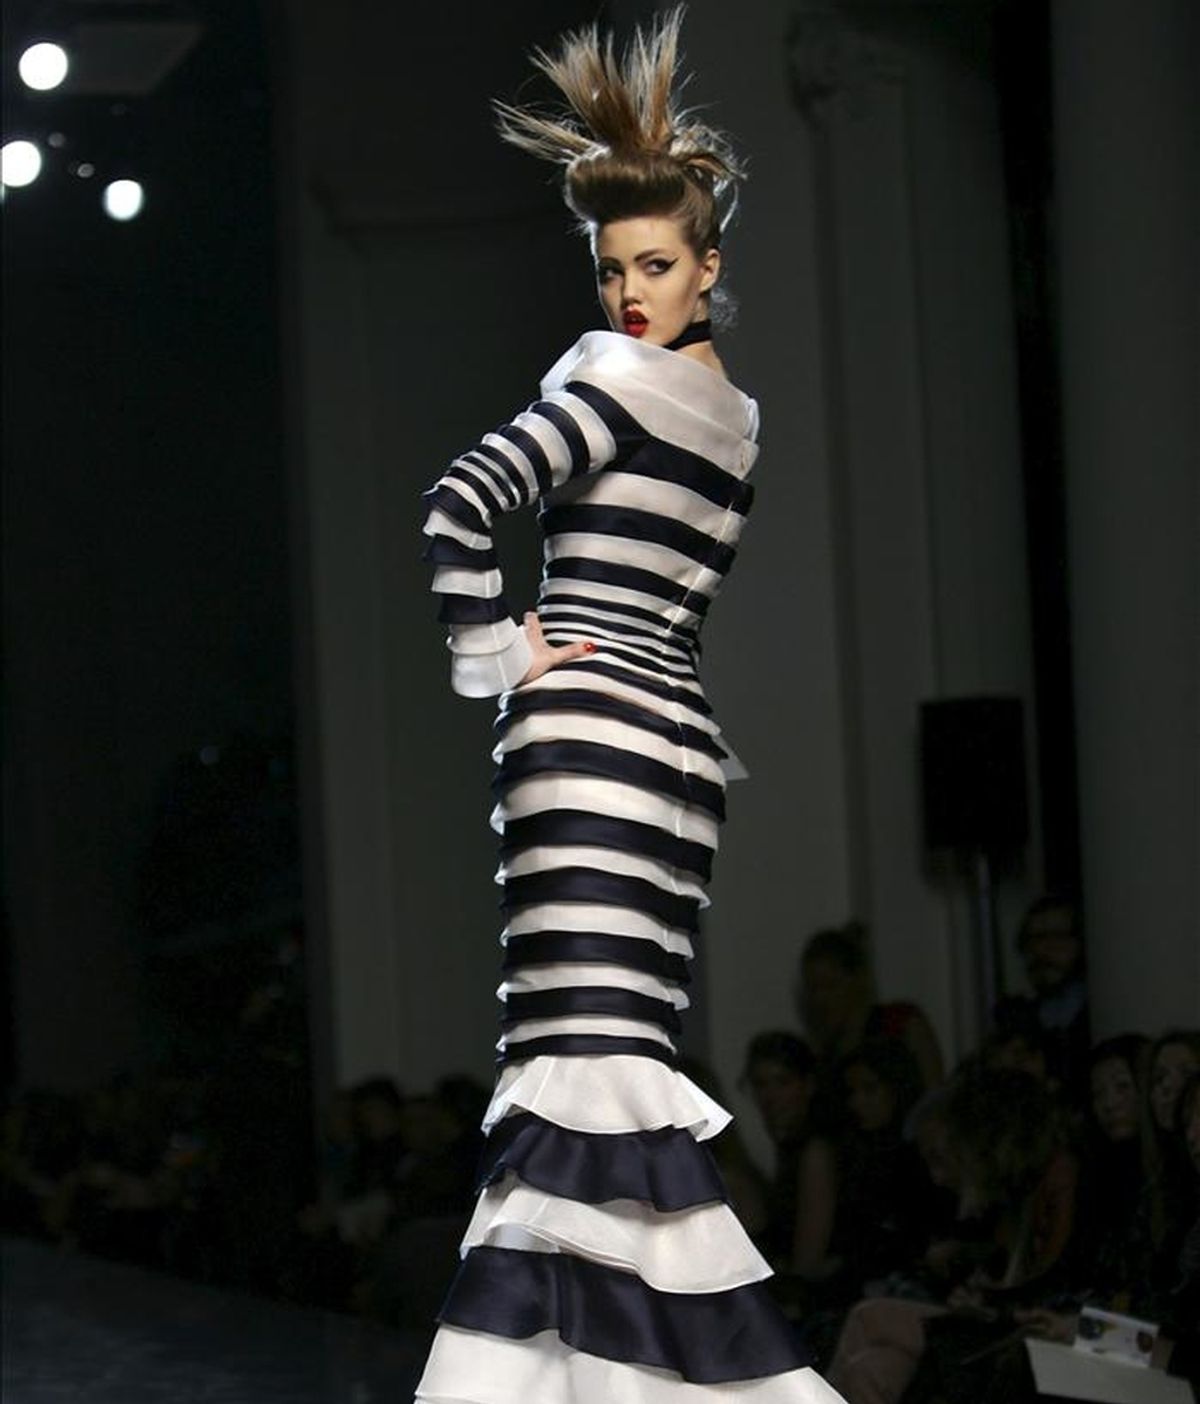 Una modelo desfilando con una creación primavera-verano 2011 del diseñador francés Jean Paul Gaultier durante la Semana de la Alta Costura de París el pasado enero. EFE